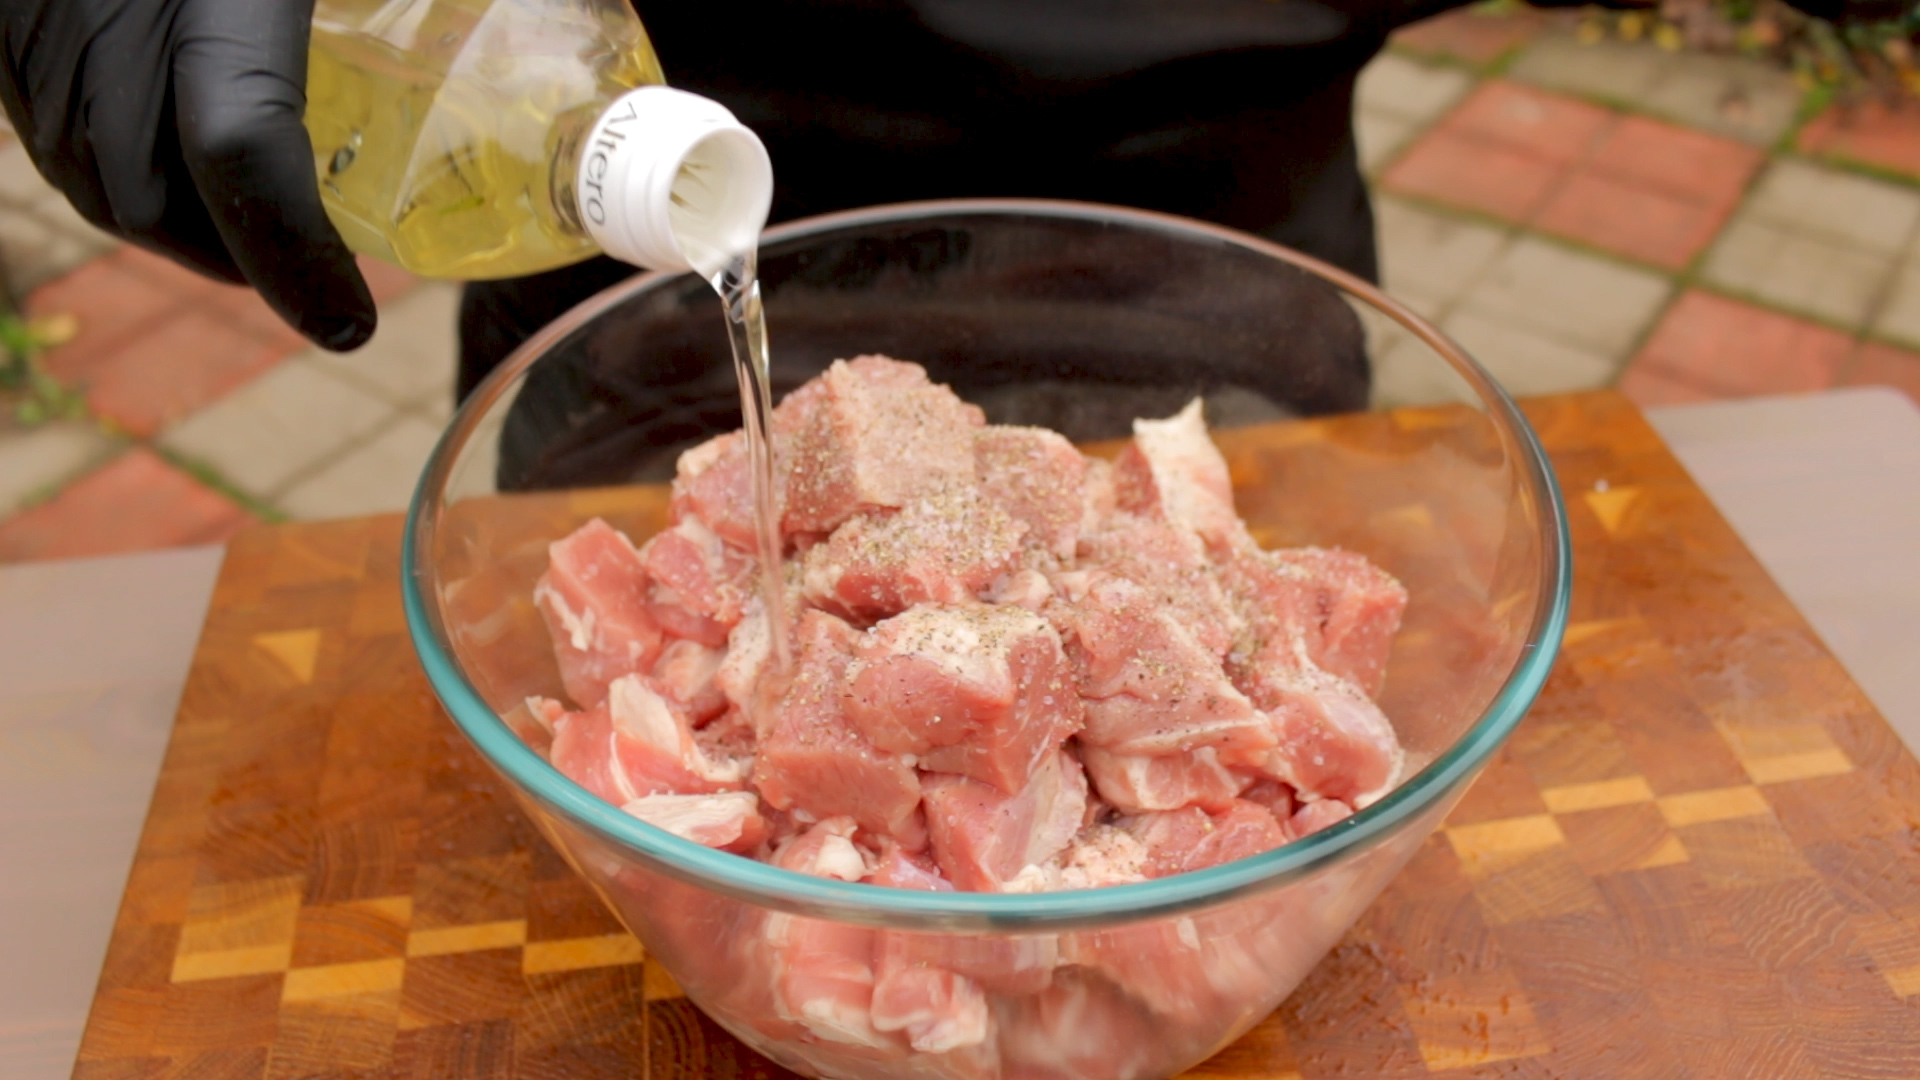 Свинина тушеная с овощами в казане на костре⁠⁠ мясные блюда